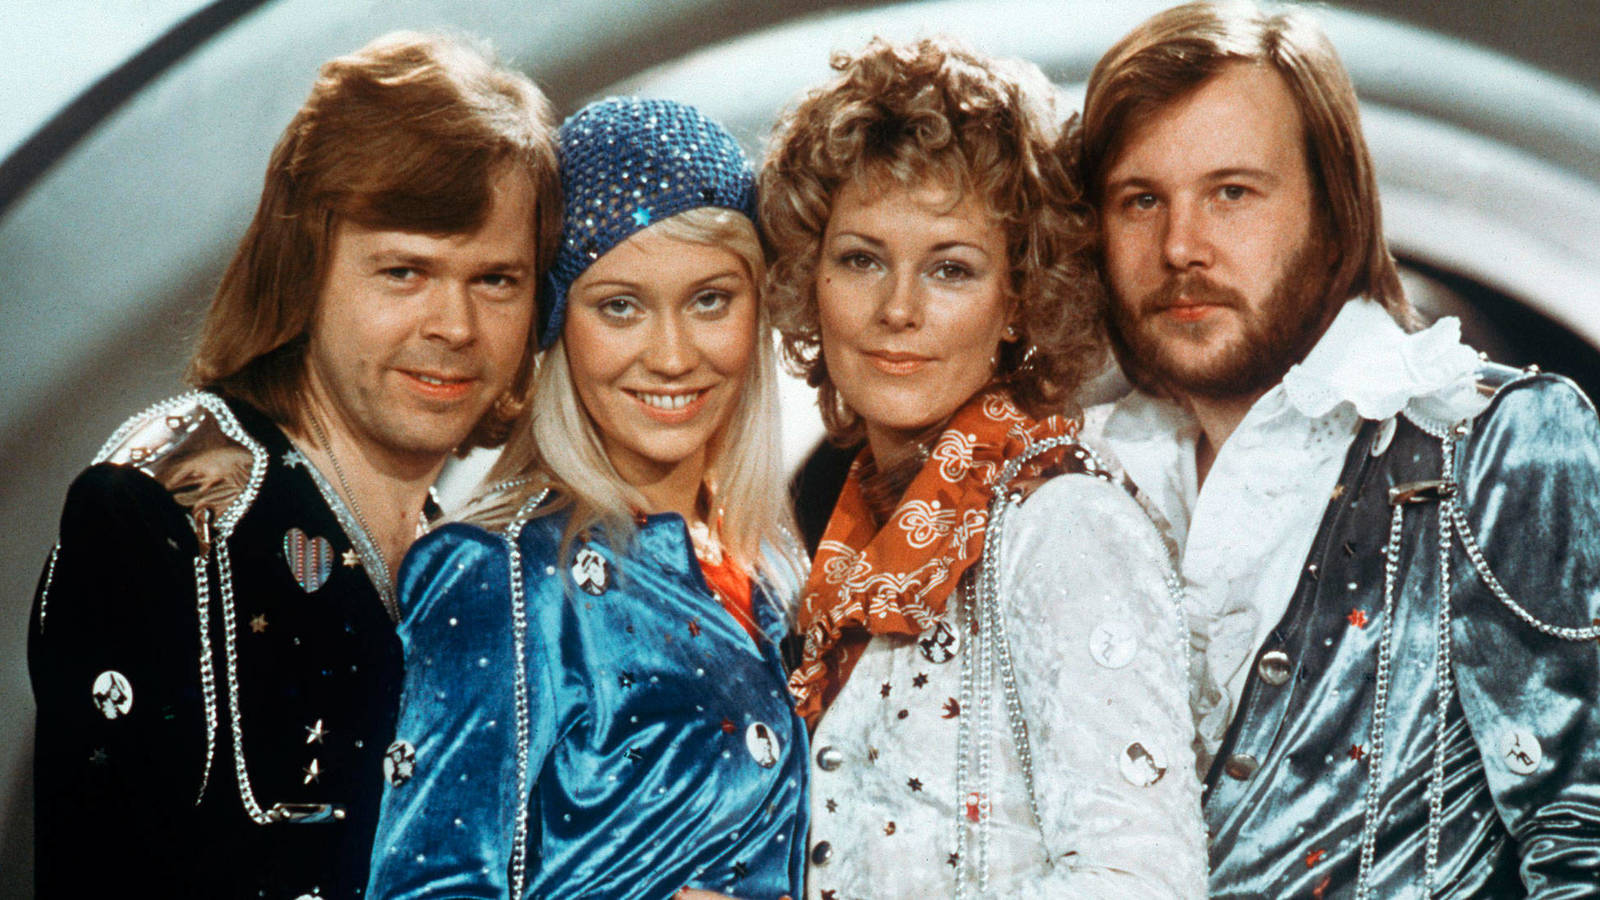 Contratar Tributo a ABBA para Eventos y Fiestas